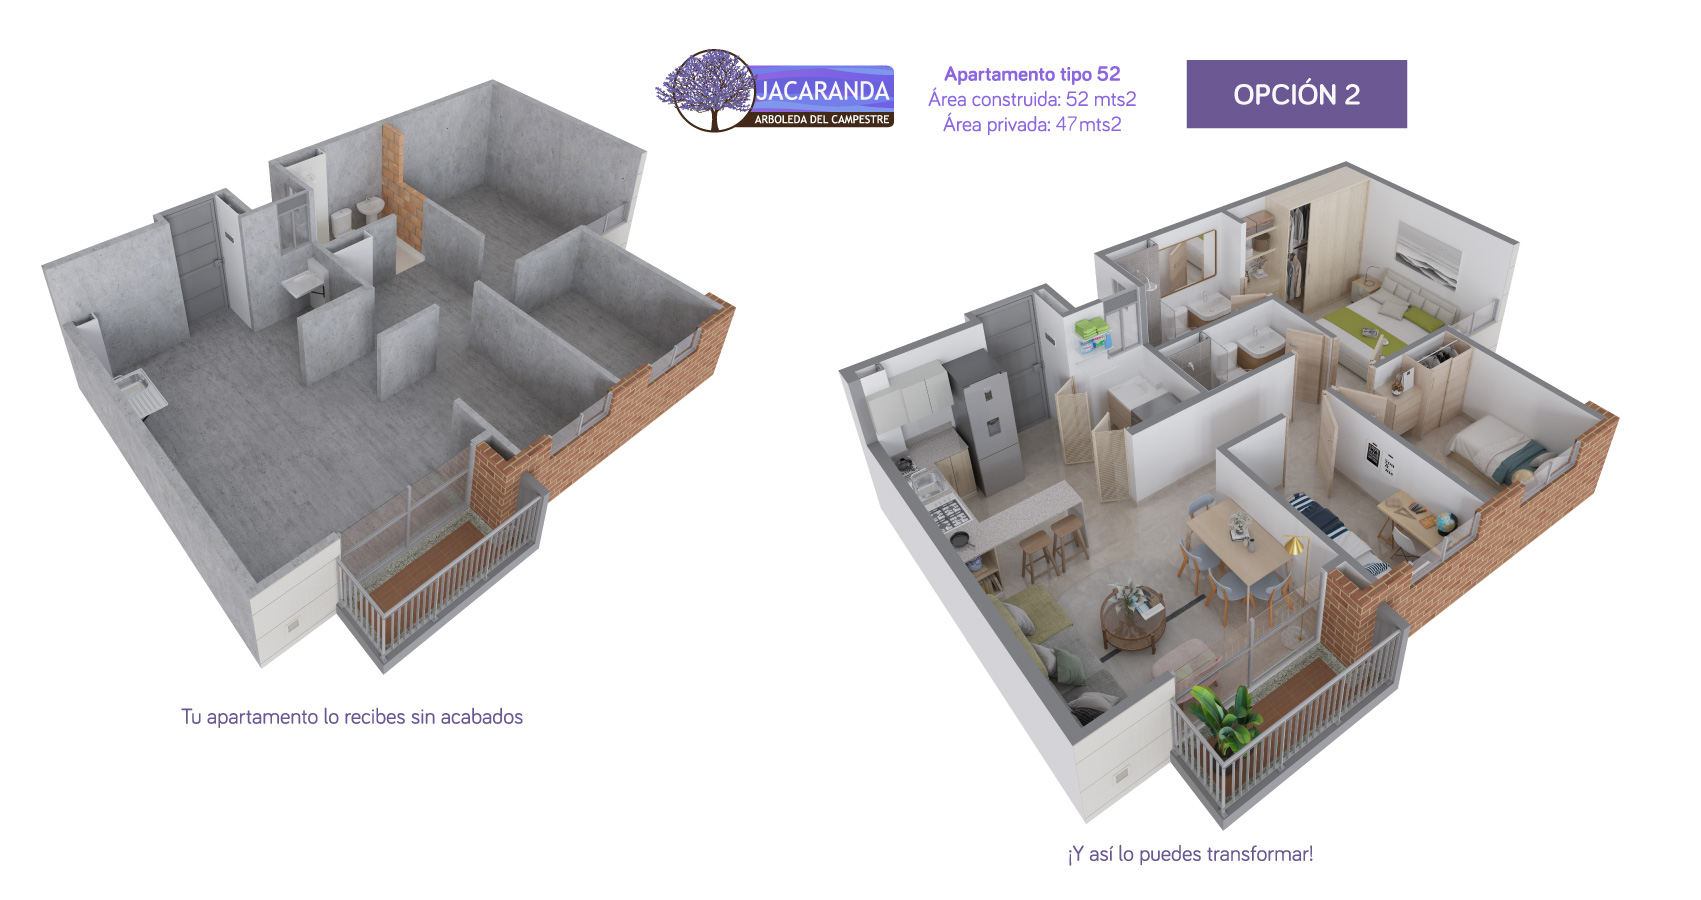 jacaranda proyecto de apartamentos y casas en ibague subsidio de vivienda constructora bolivar